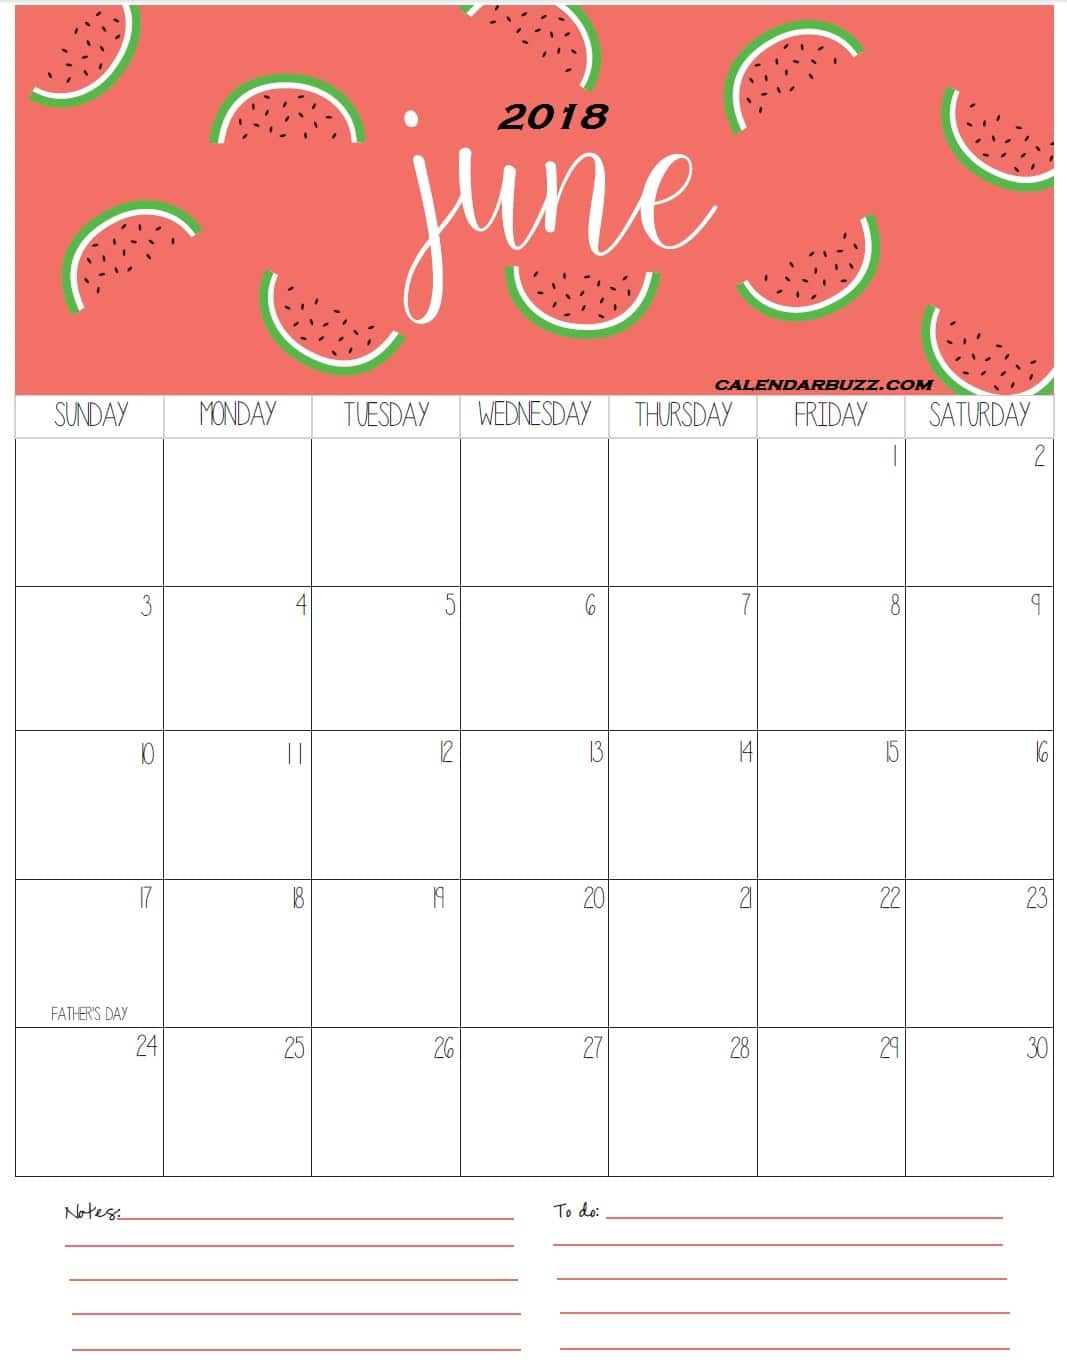 June Calendar For 2018